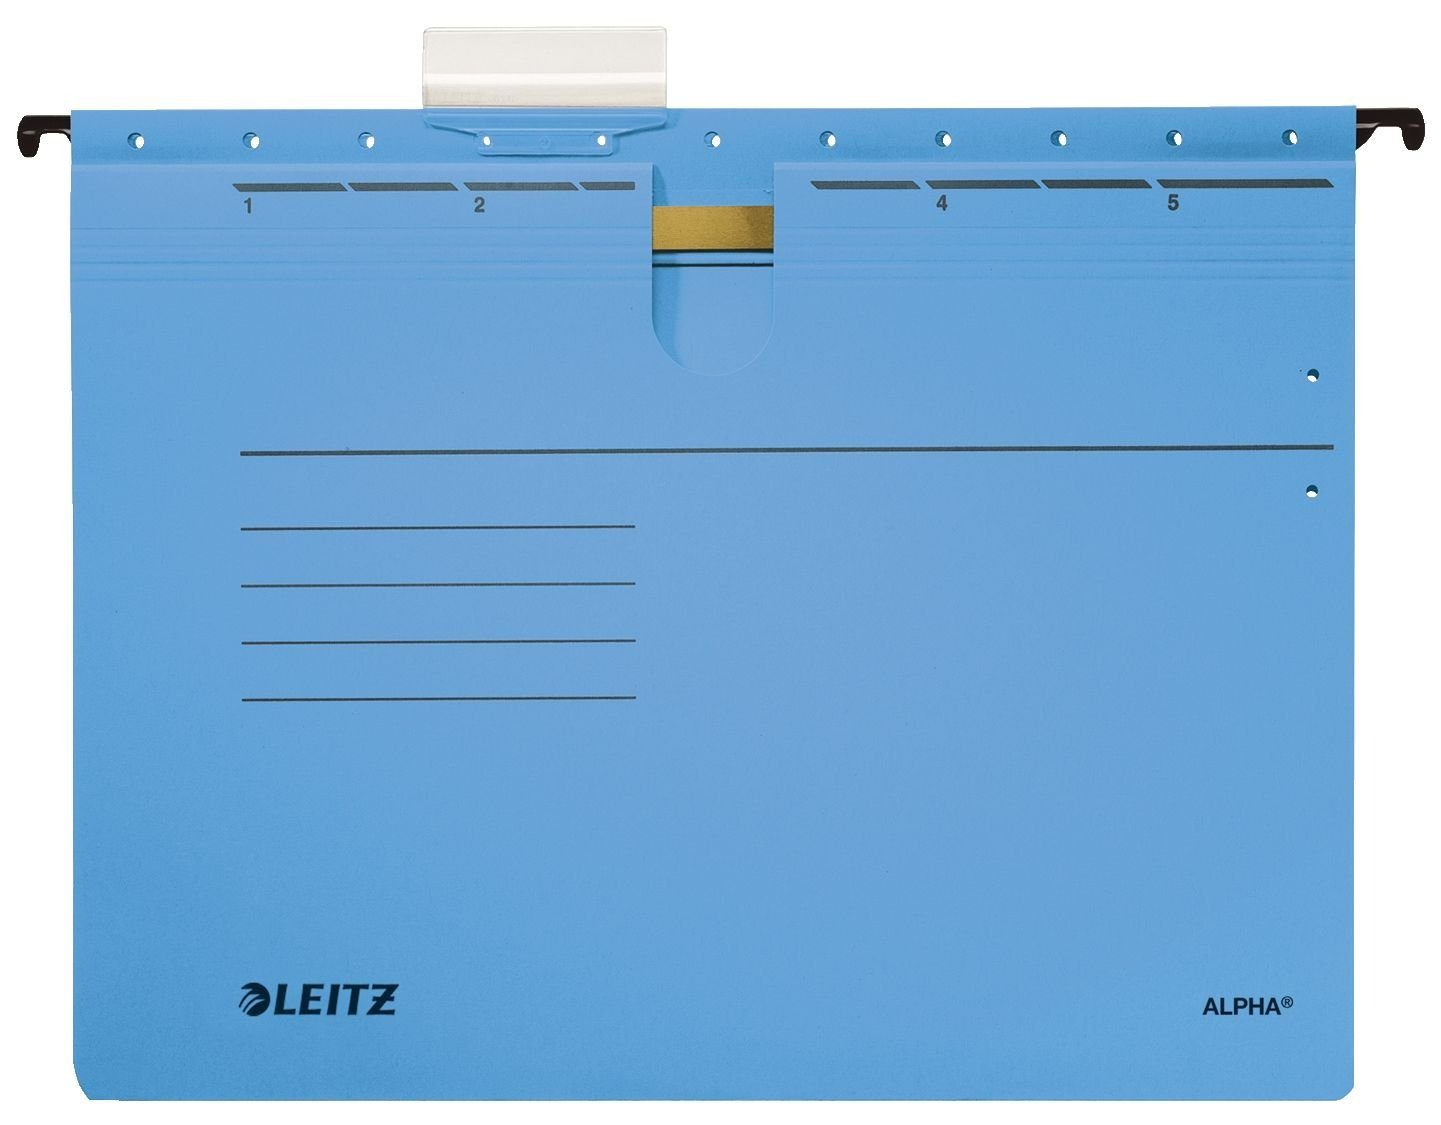 LEITZ Hefter Leitz 1984-00-35 Hängehefter ALPHA® - kfm. Heftung, Karton, blau